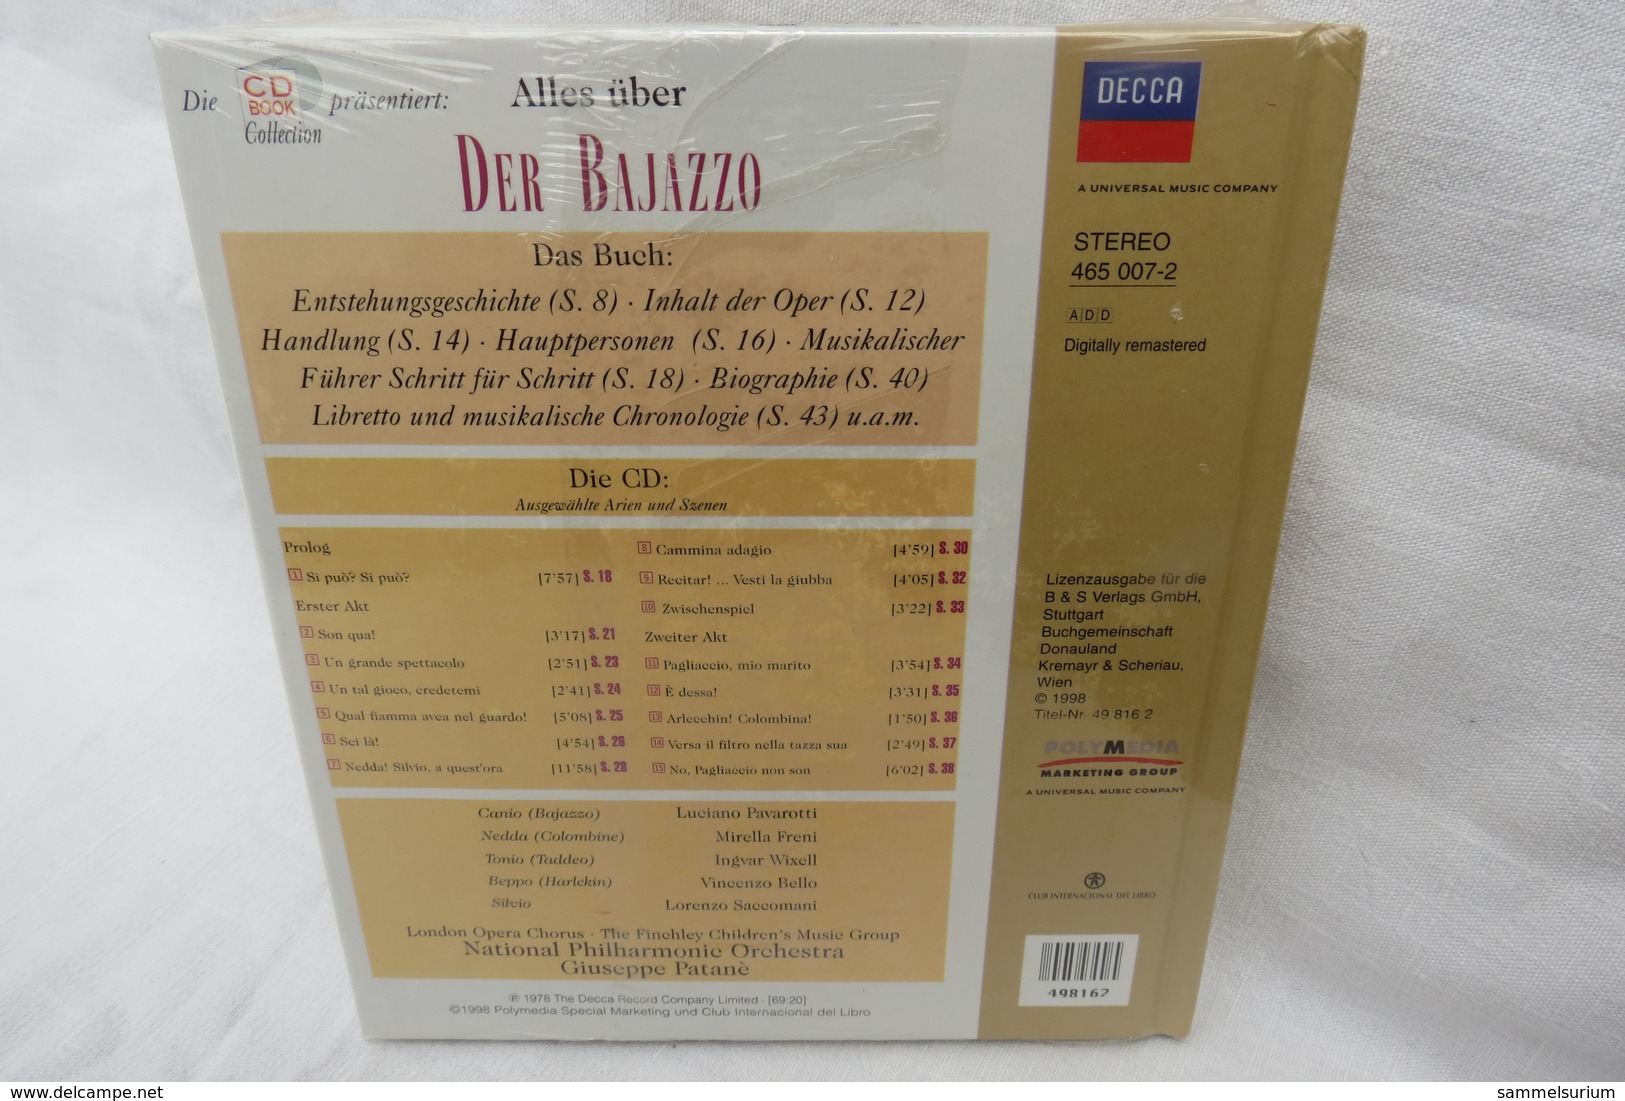 CD "Der Bajazzo / Ruggero Leoncavallo" Mit Buch Aus Der CD Book Collection (ungeöffnet, Original Eingeschweißt) - Oper & Operette